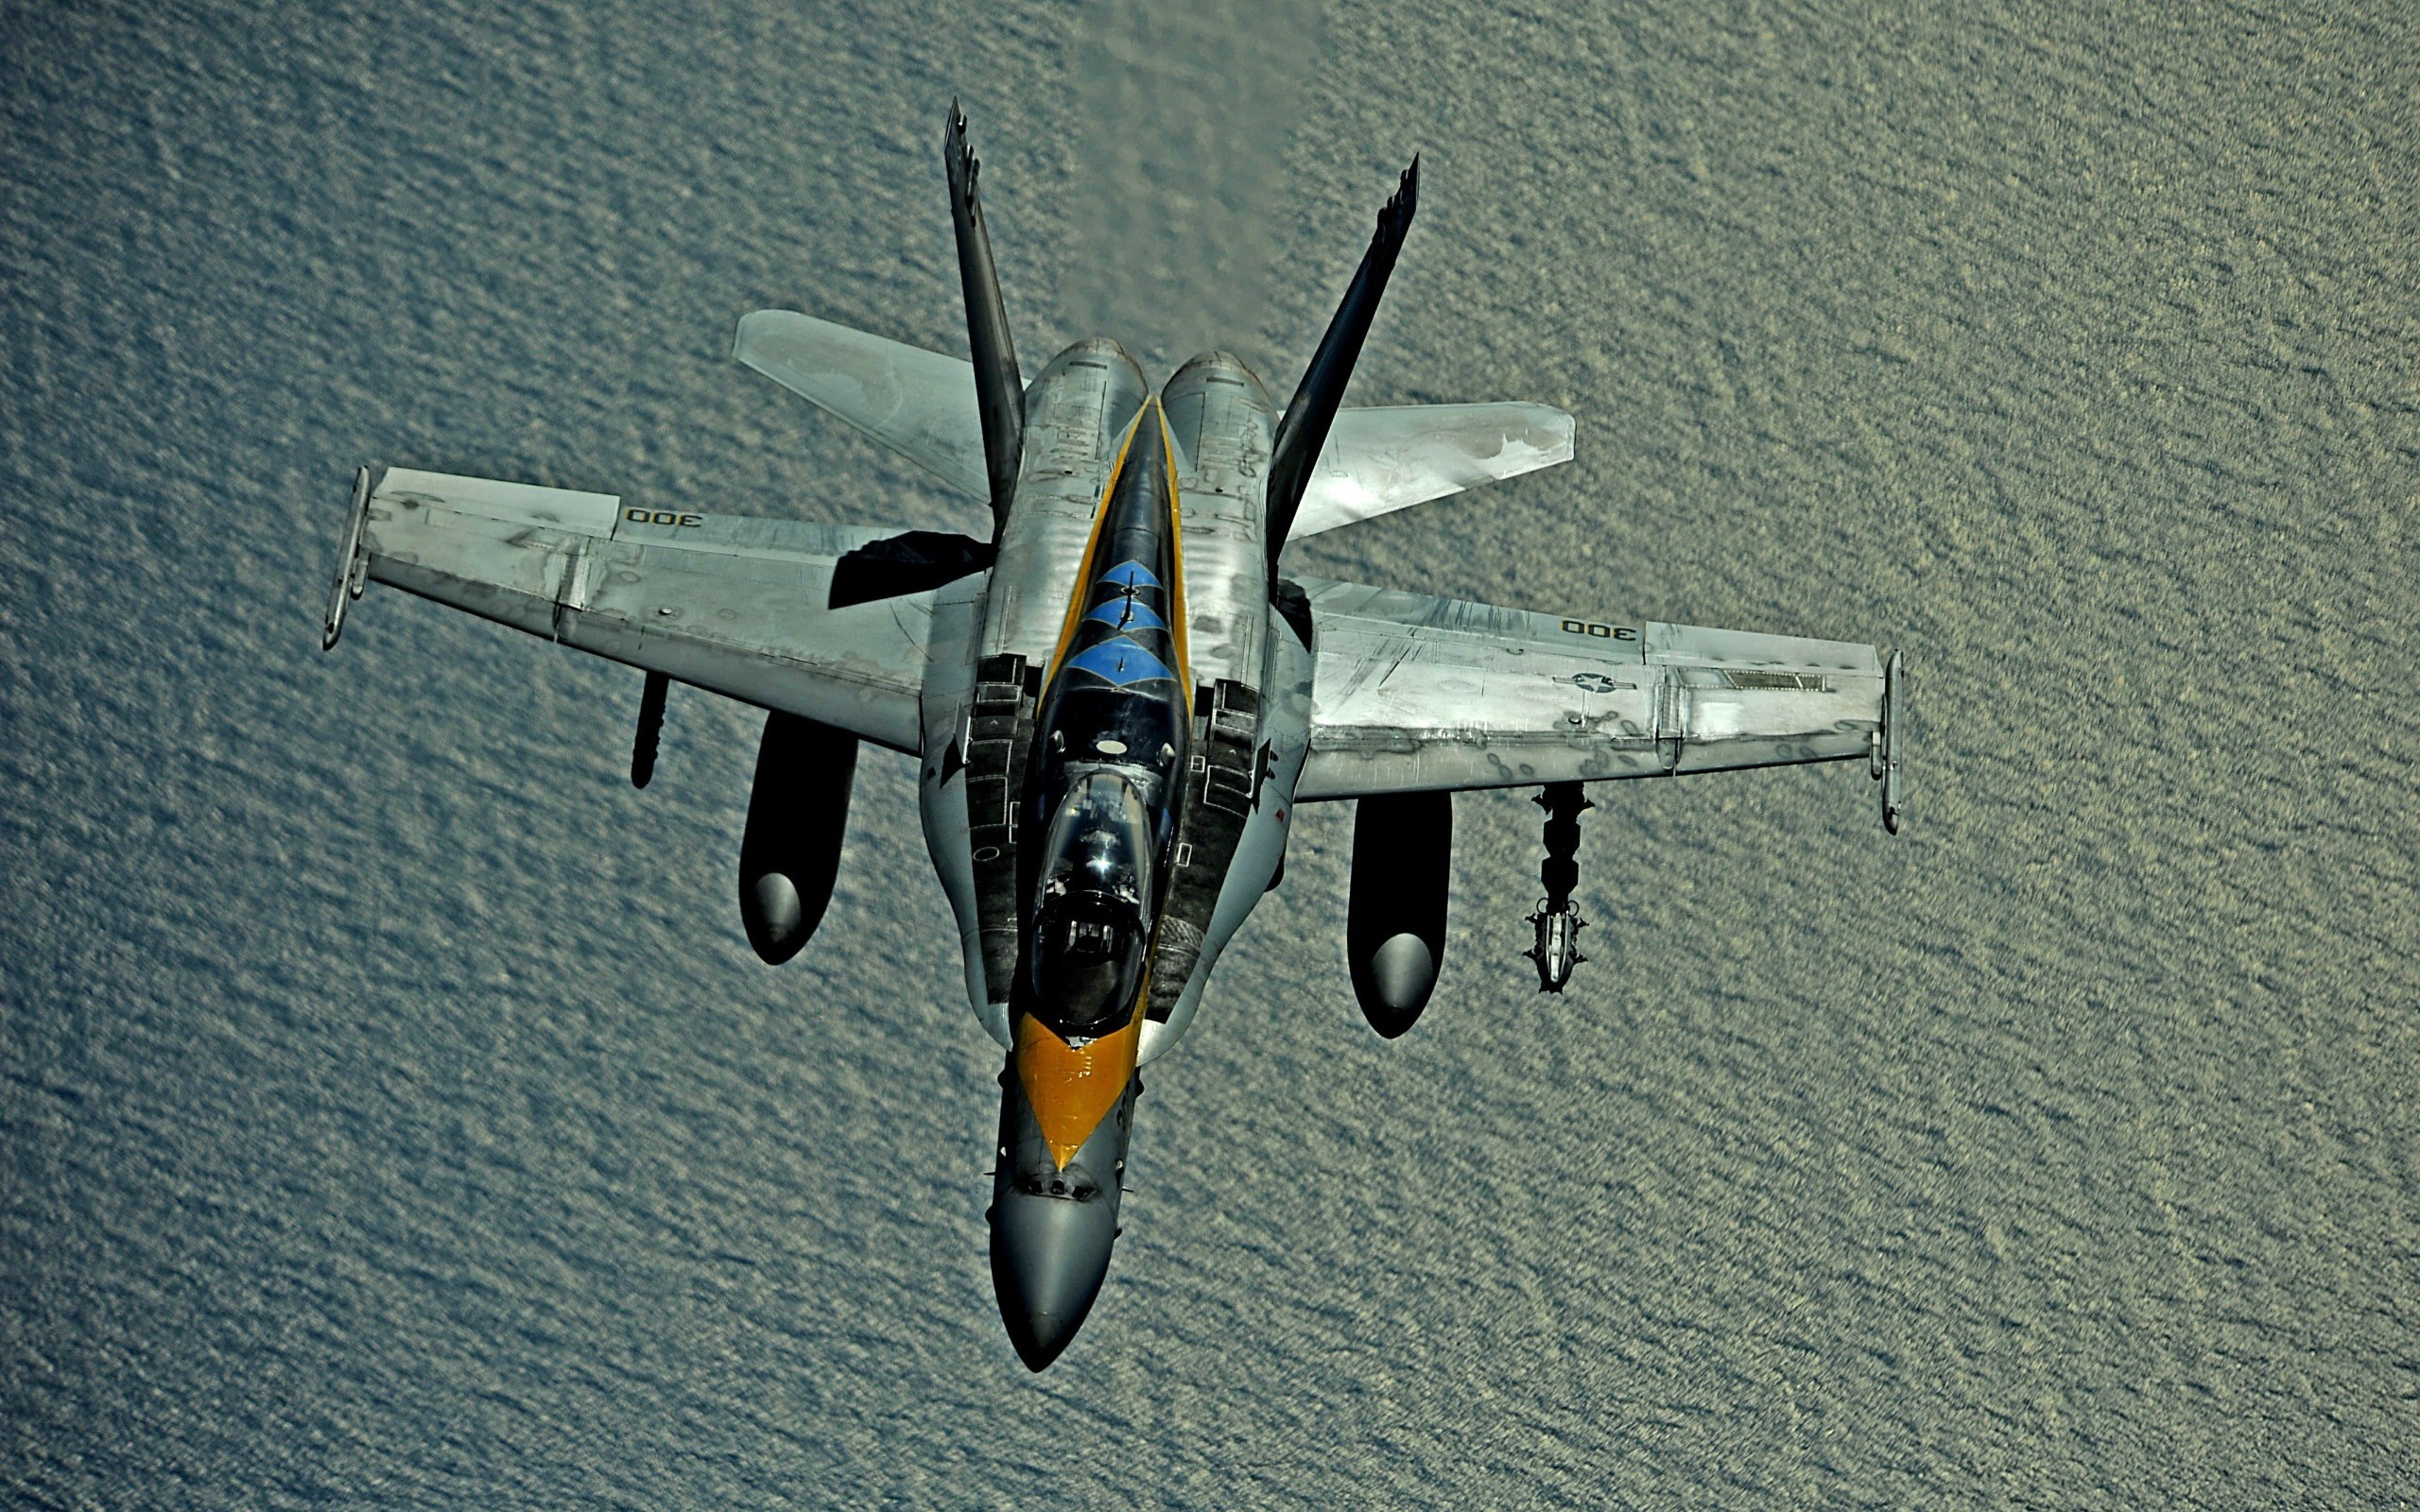 вода, самолет, транспортные средства, F- 18 Hornet, полет - обои на рабочий стол